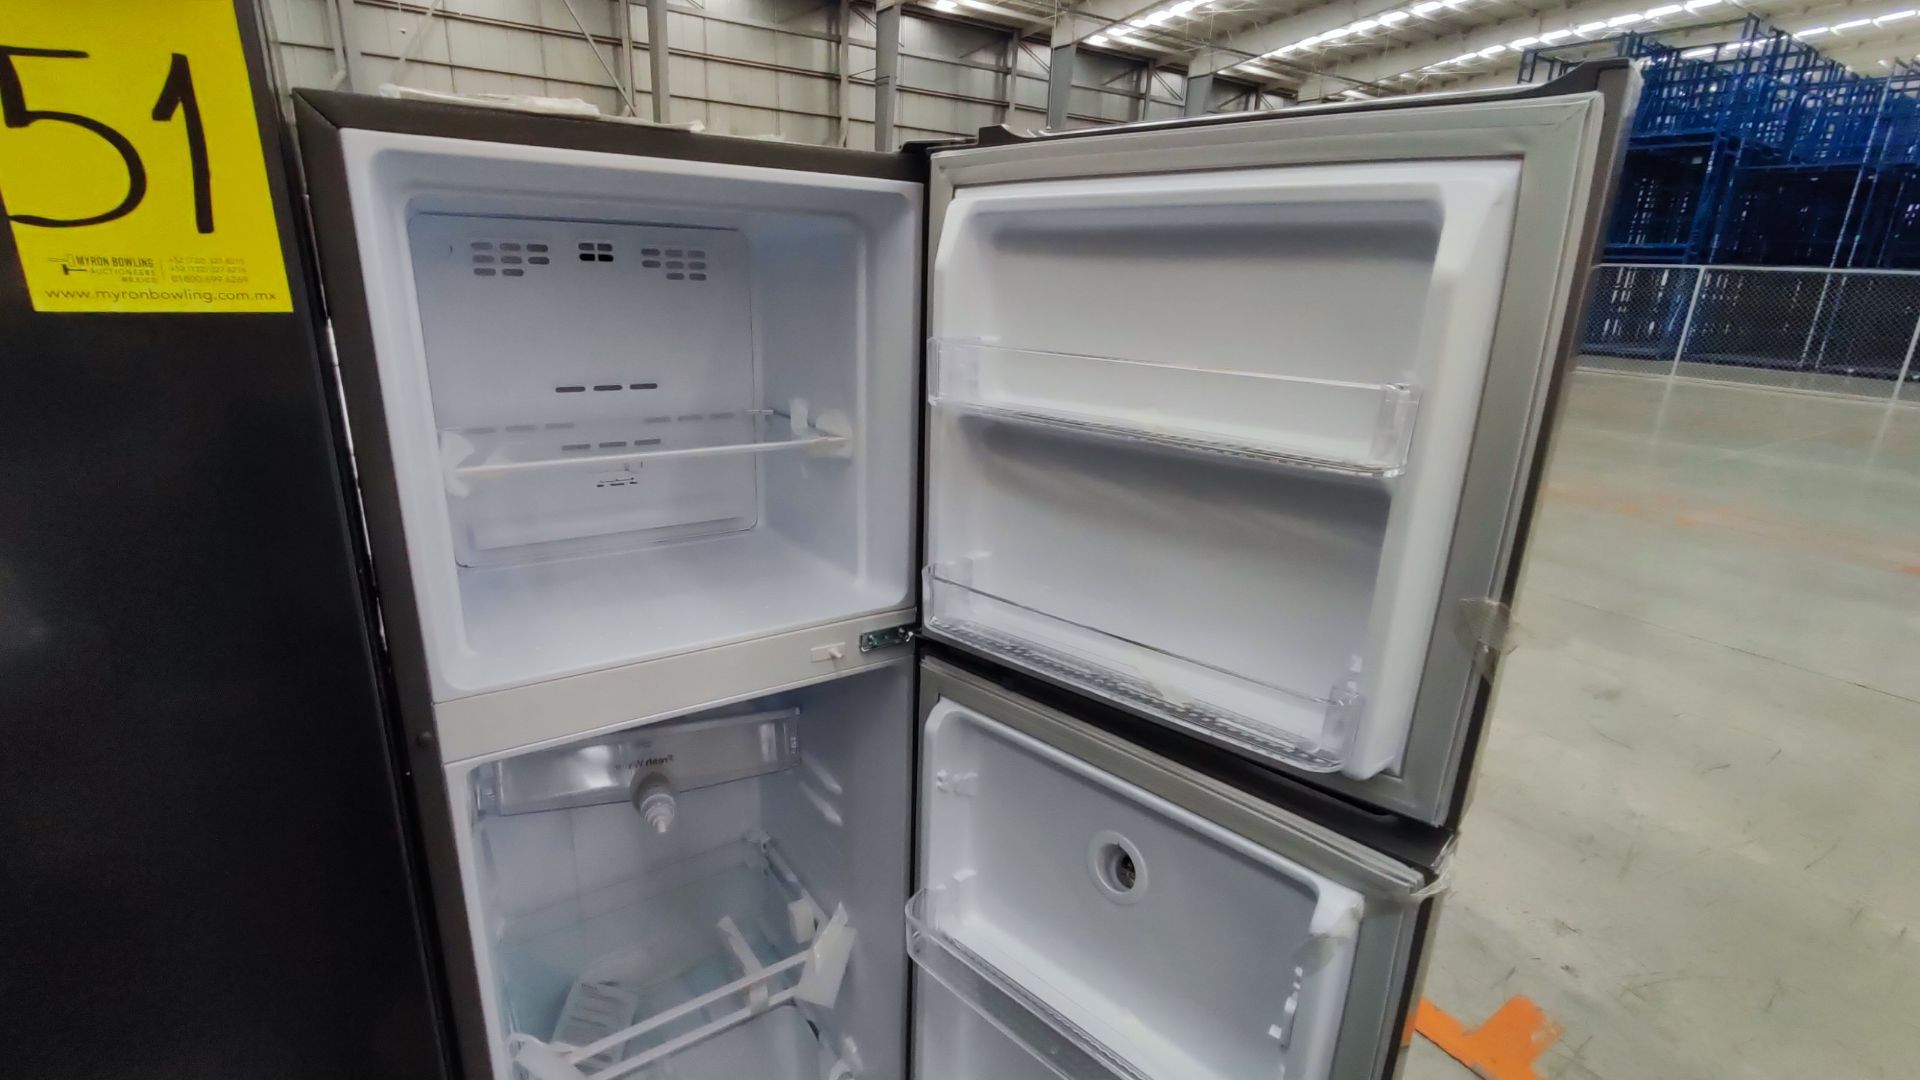 1 Refrigerador Marca Winia, Modelo DFR25210GMDX, Serie MR225N07610604, Color Gris Detalles Estético - Image 9 of 11